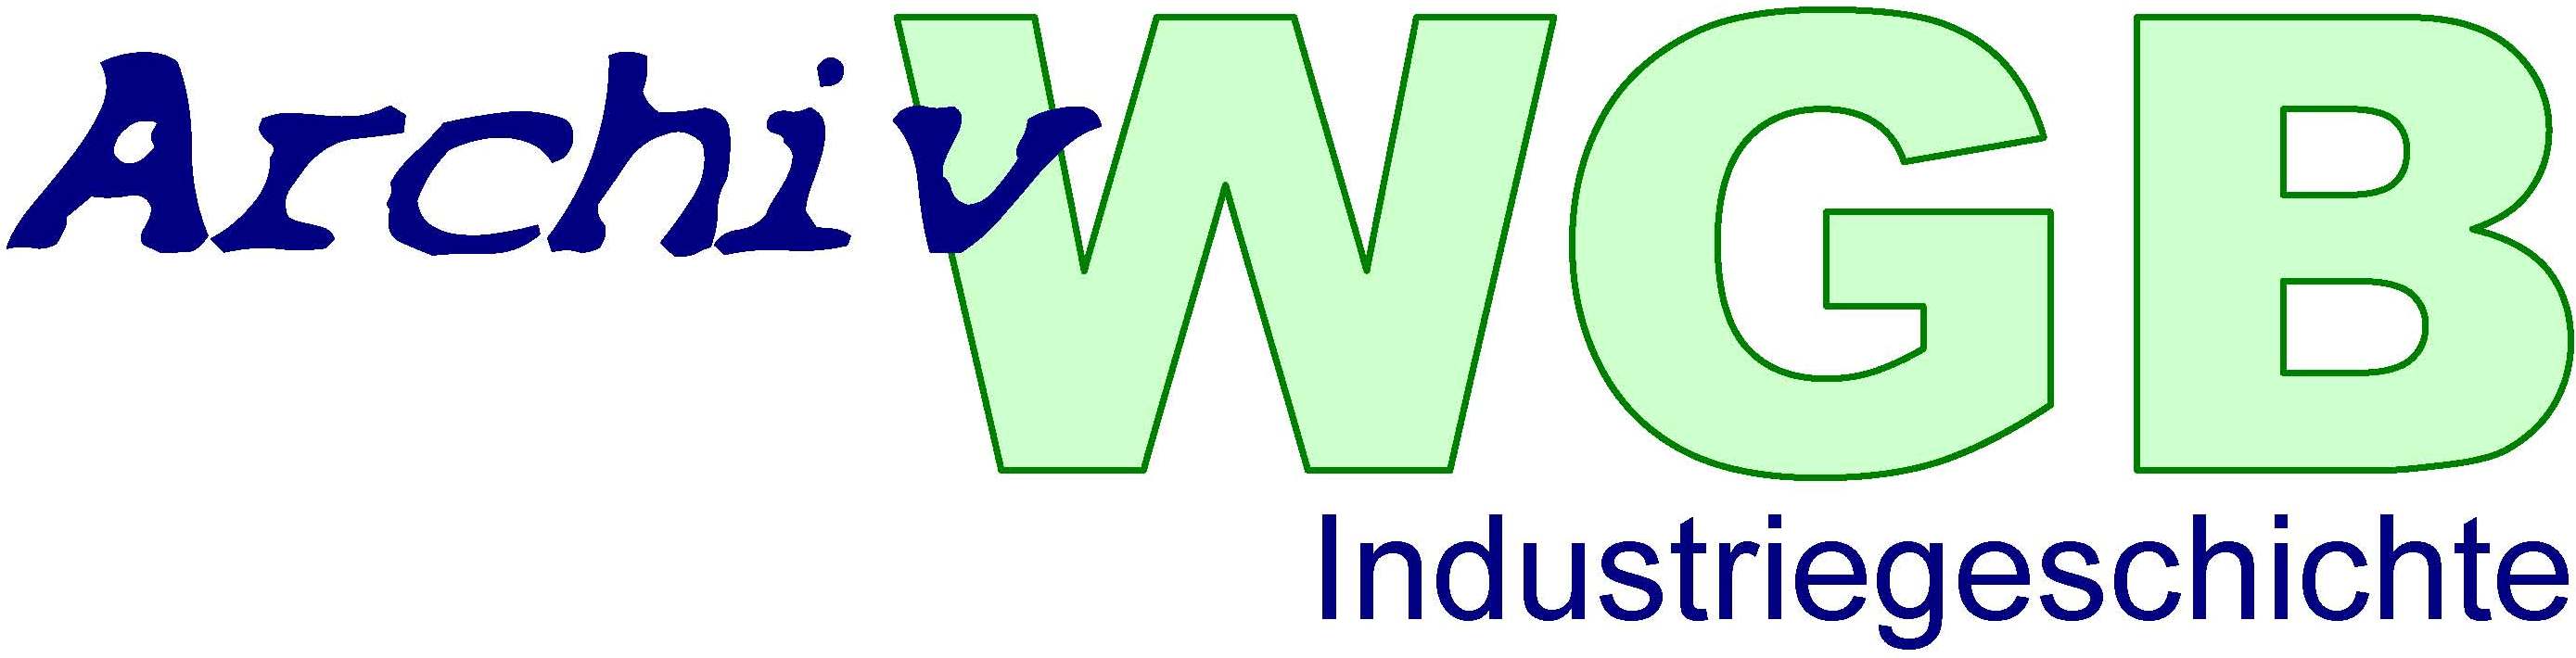 archiv-wgb-logo-2013-08-industriegeschichte